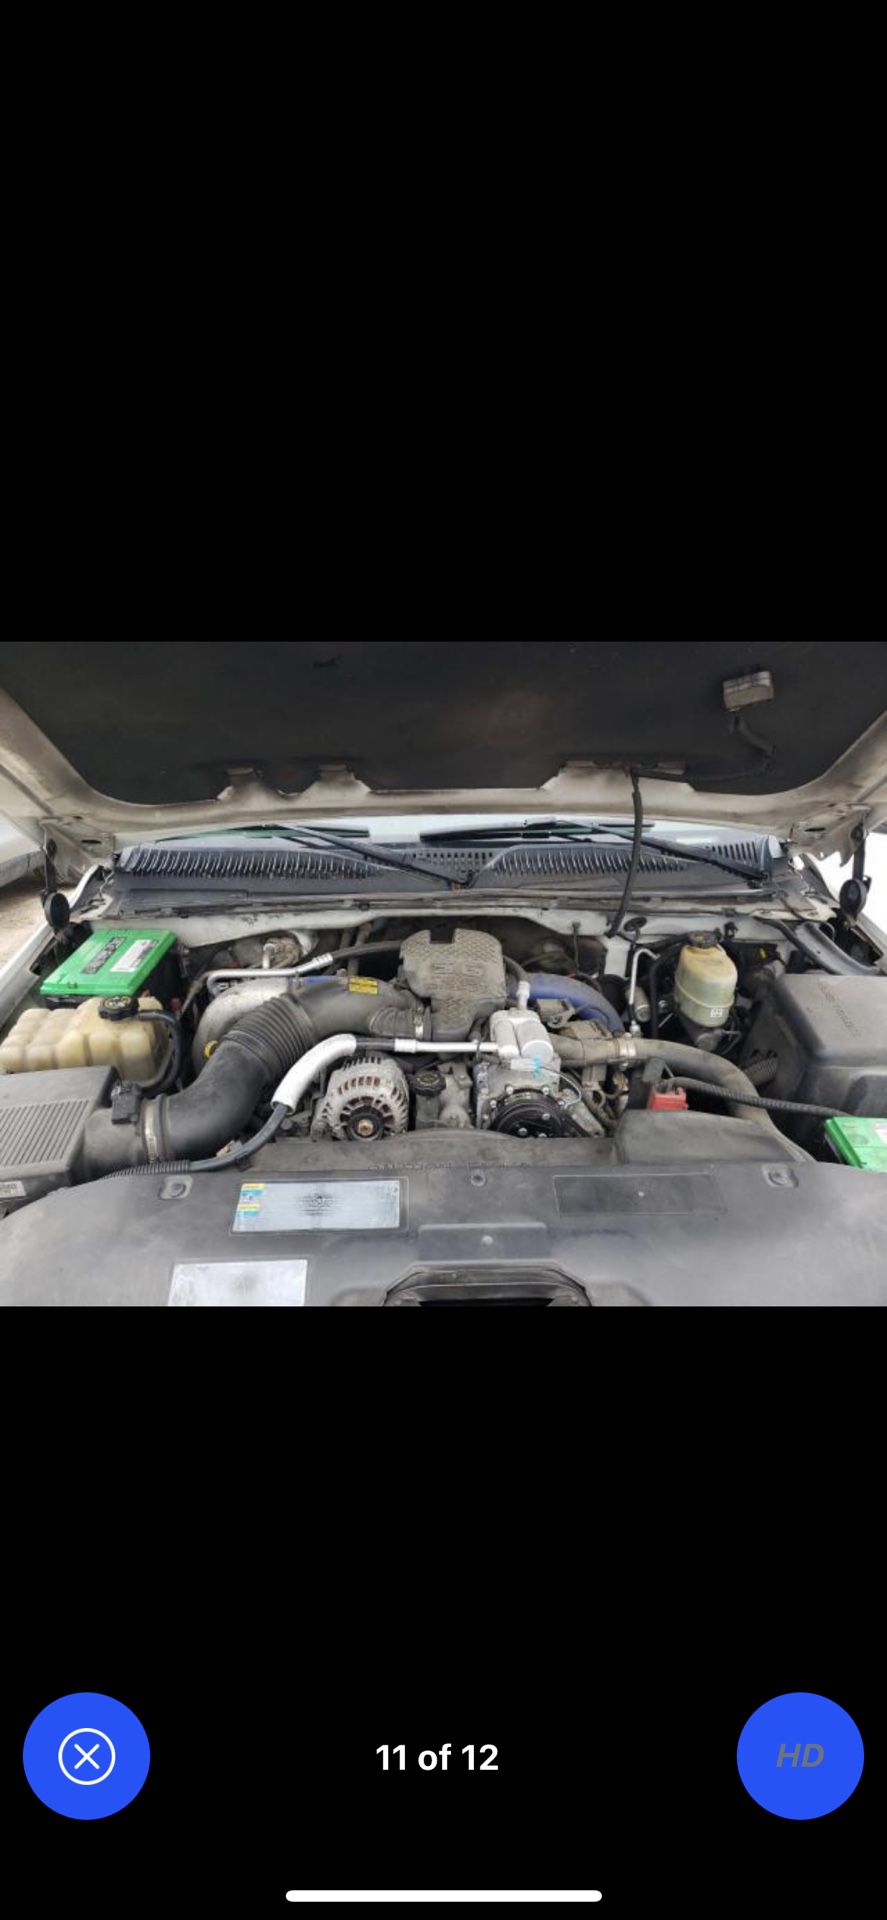 Chevy Silverado Duramax Engine 6.6 Diesel Lb7 Parts